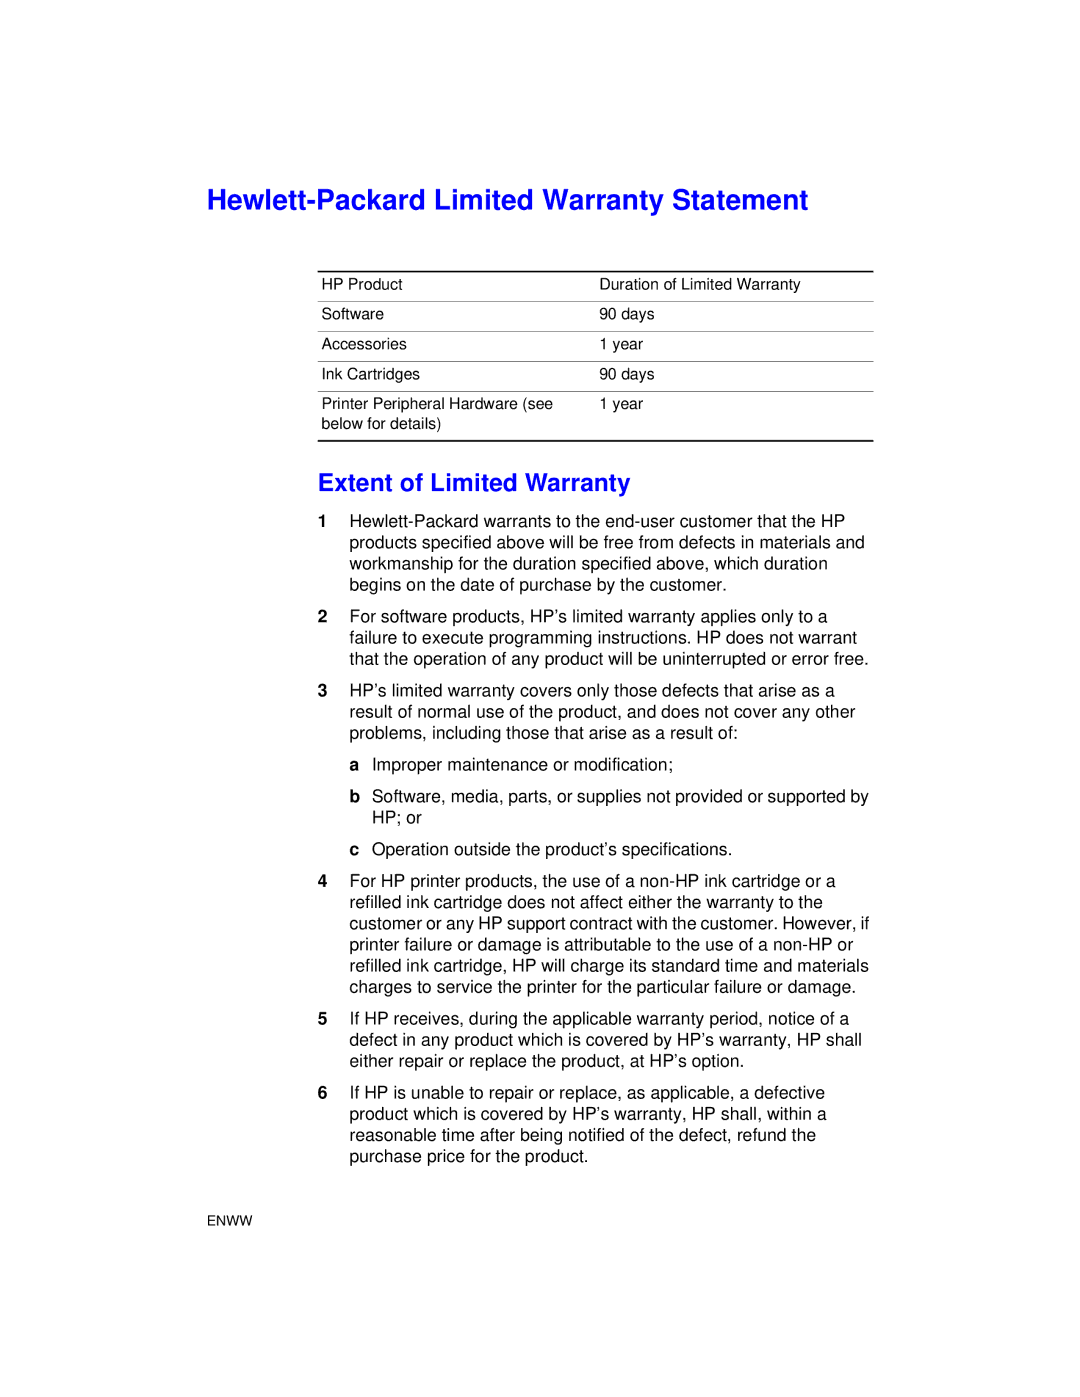 HP Color Inkjet cp1700 manual Hewlett-Packard Limited Warranty Statement 